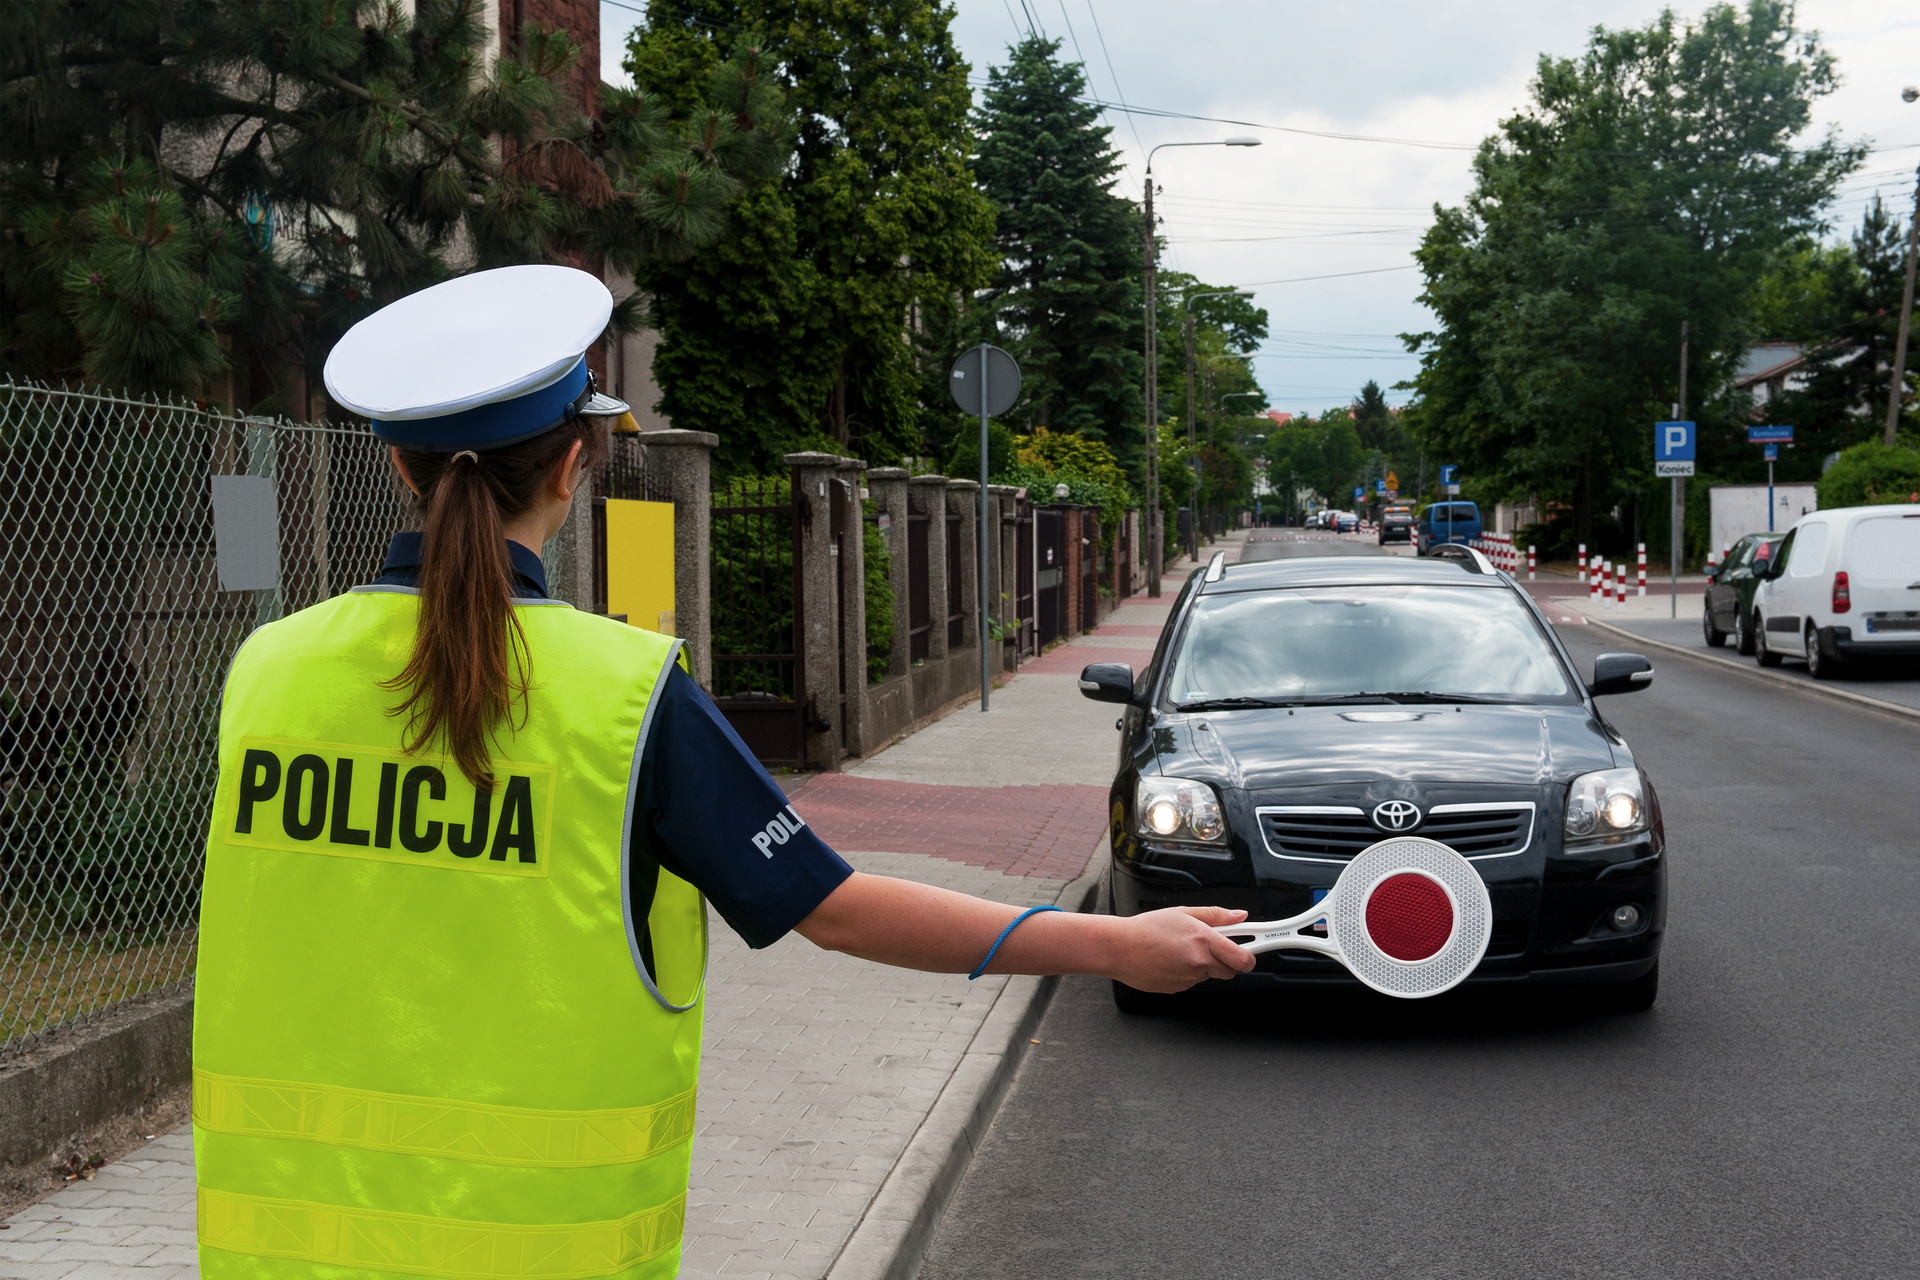 Zdjęcie przedstawia policjantkę zatrzymującą samochód do kontroli. Policjantka ustawiona jest tyłem do obserwatora zdjęcia, w wyciągniętej prawej ręce ma czerwony lizak. Zatrzymywany samochód to elegancka toyota w ciemnych barwach. Miejsce akcji to niezbyt ruchliwa droga w dzielnicy willowej.